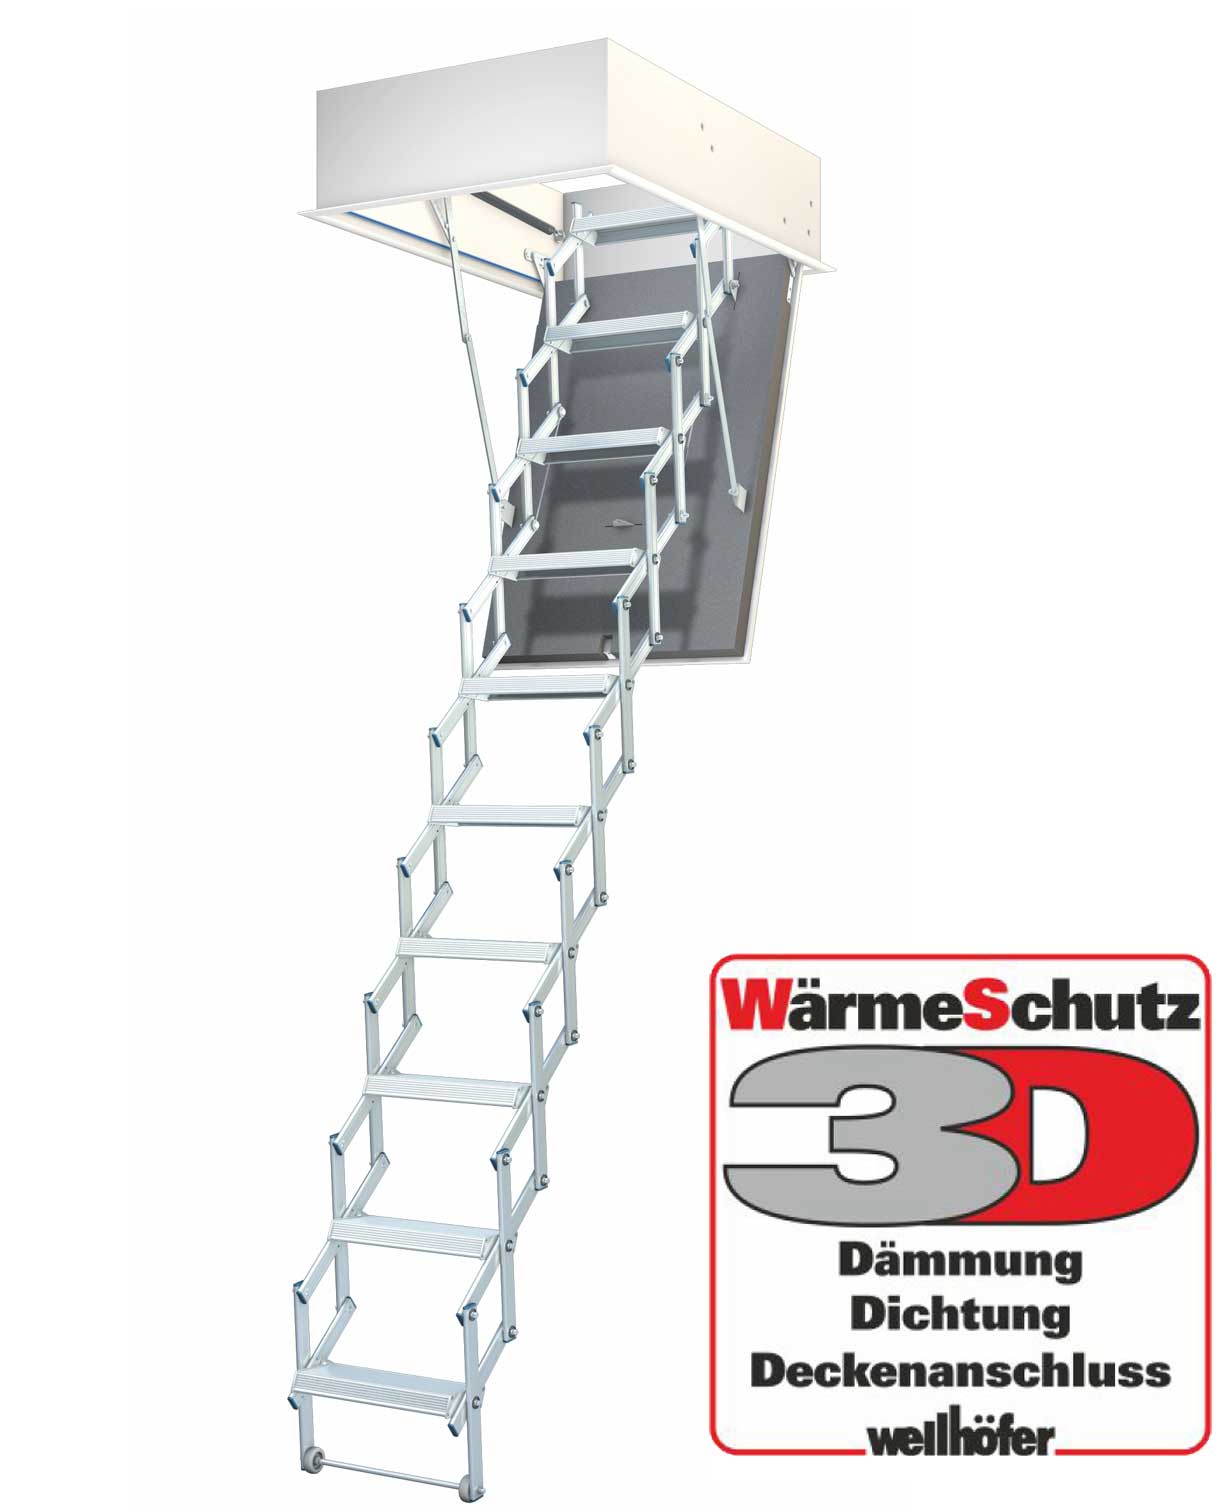 Wellhöfer Bodentreppe LiliPut + 3D Wärmeschutz 266-272 cm 100 x 60 cm  (Länge x Breite), 100 x 60 cm (Länge x Breite), 266-272 cm